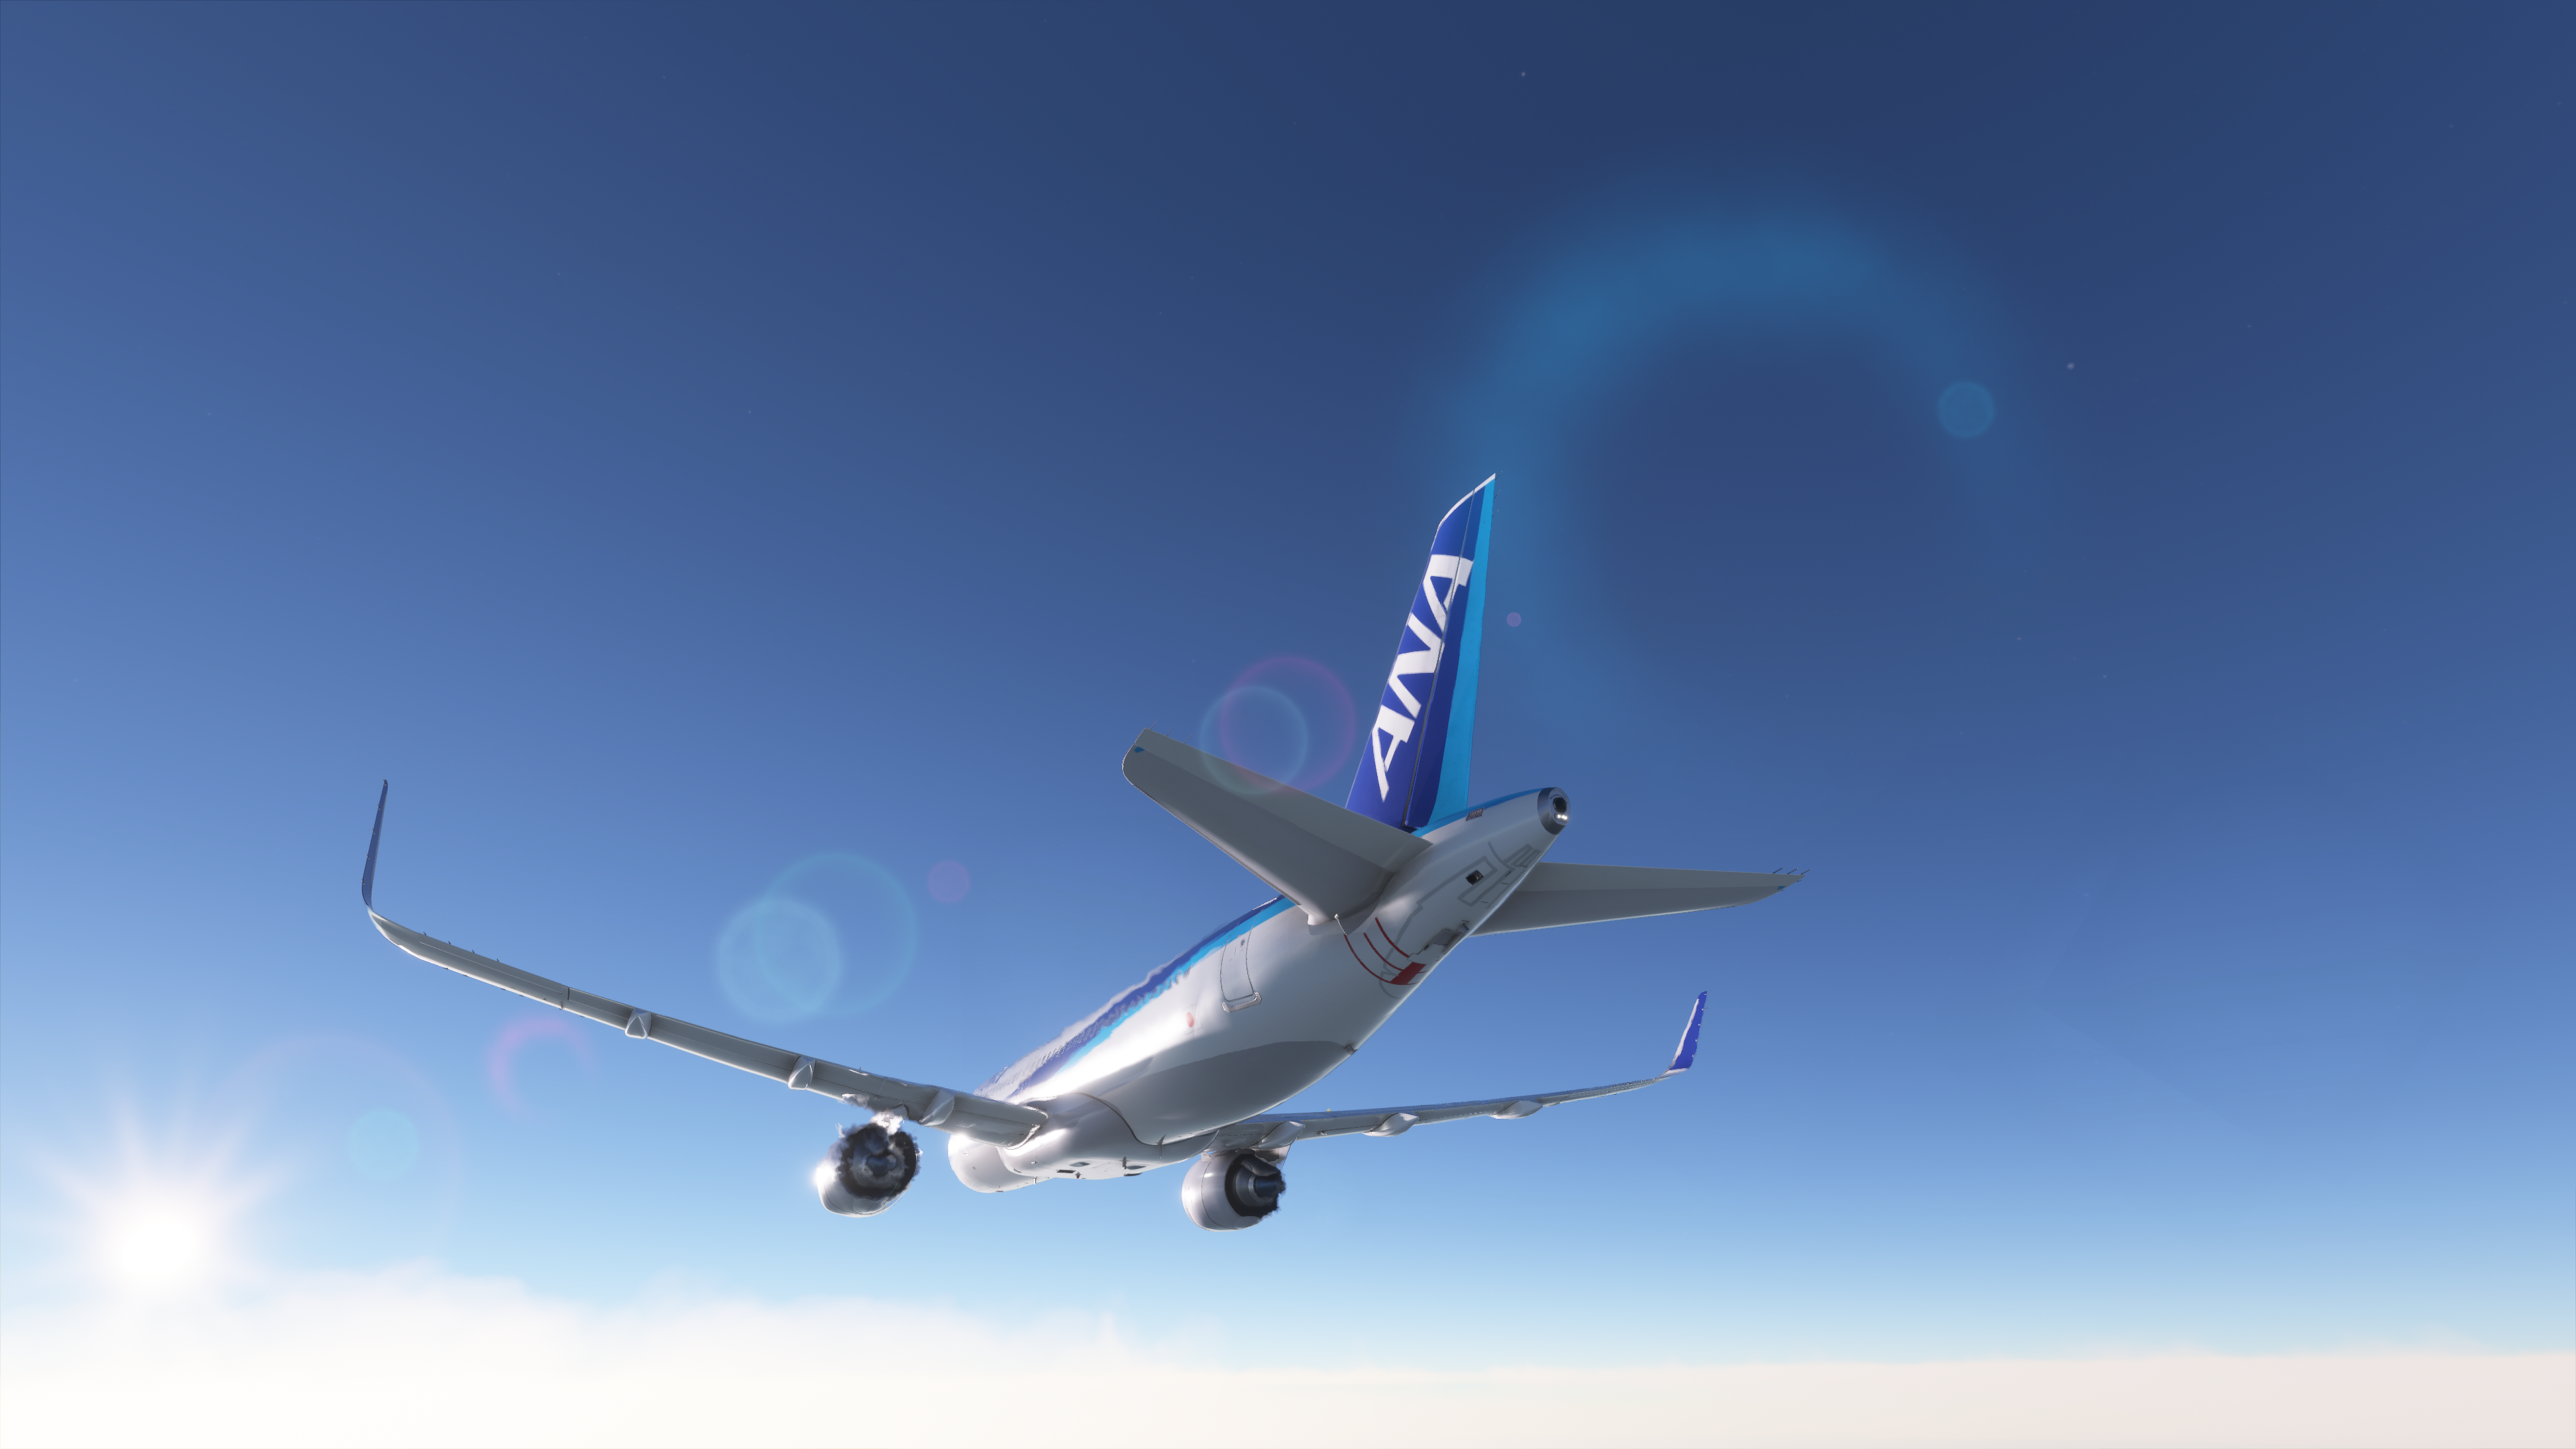 General 3840x2160 flight simulator Airbus aircraft Microsoft Flight Simulator Microsoft Flight Simulator 2020 flying PC gaming vehicle passenger aircraft sky screen shot